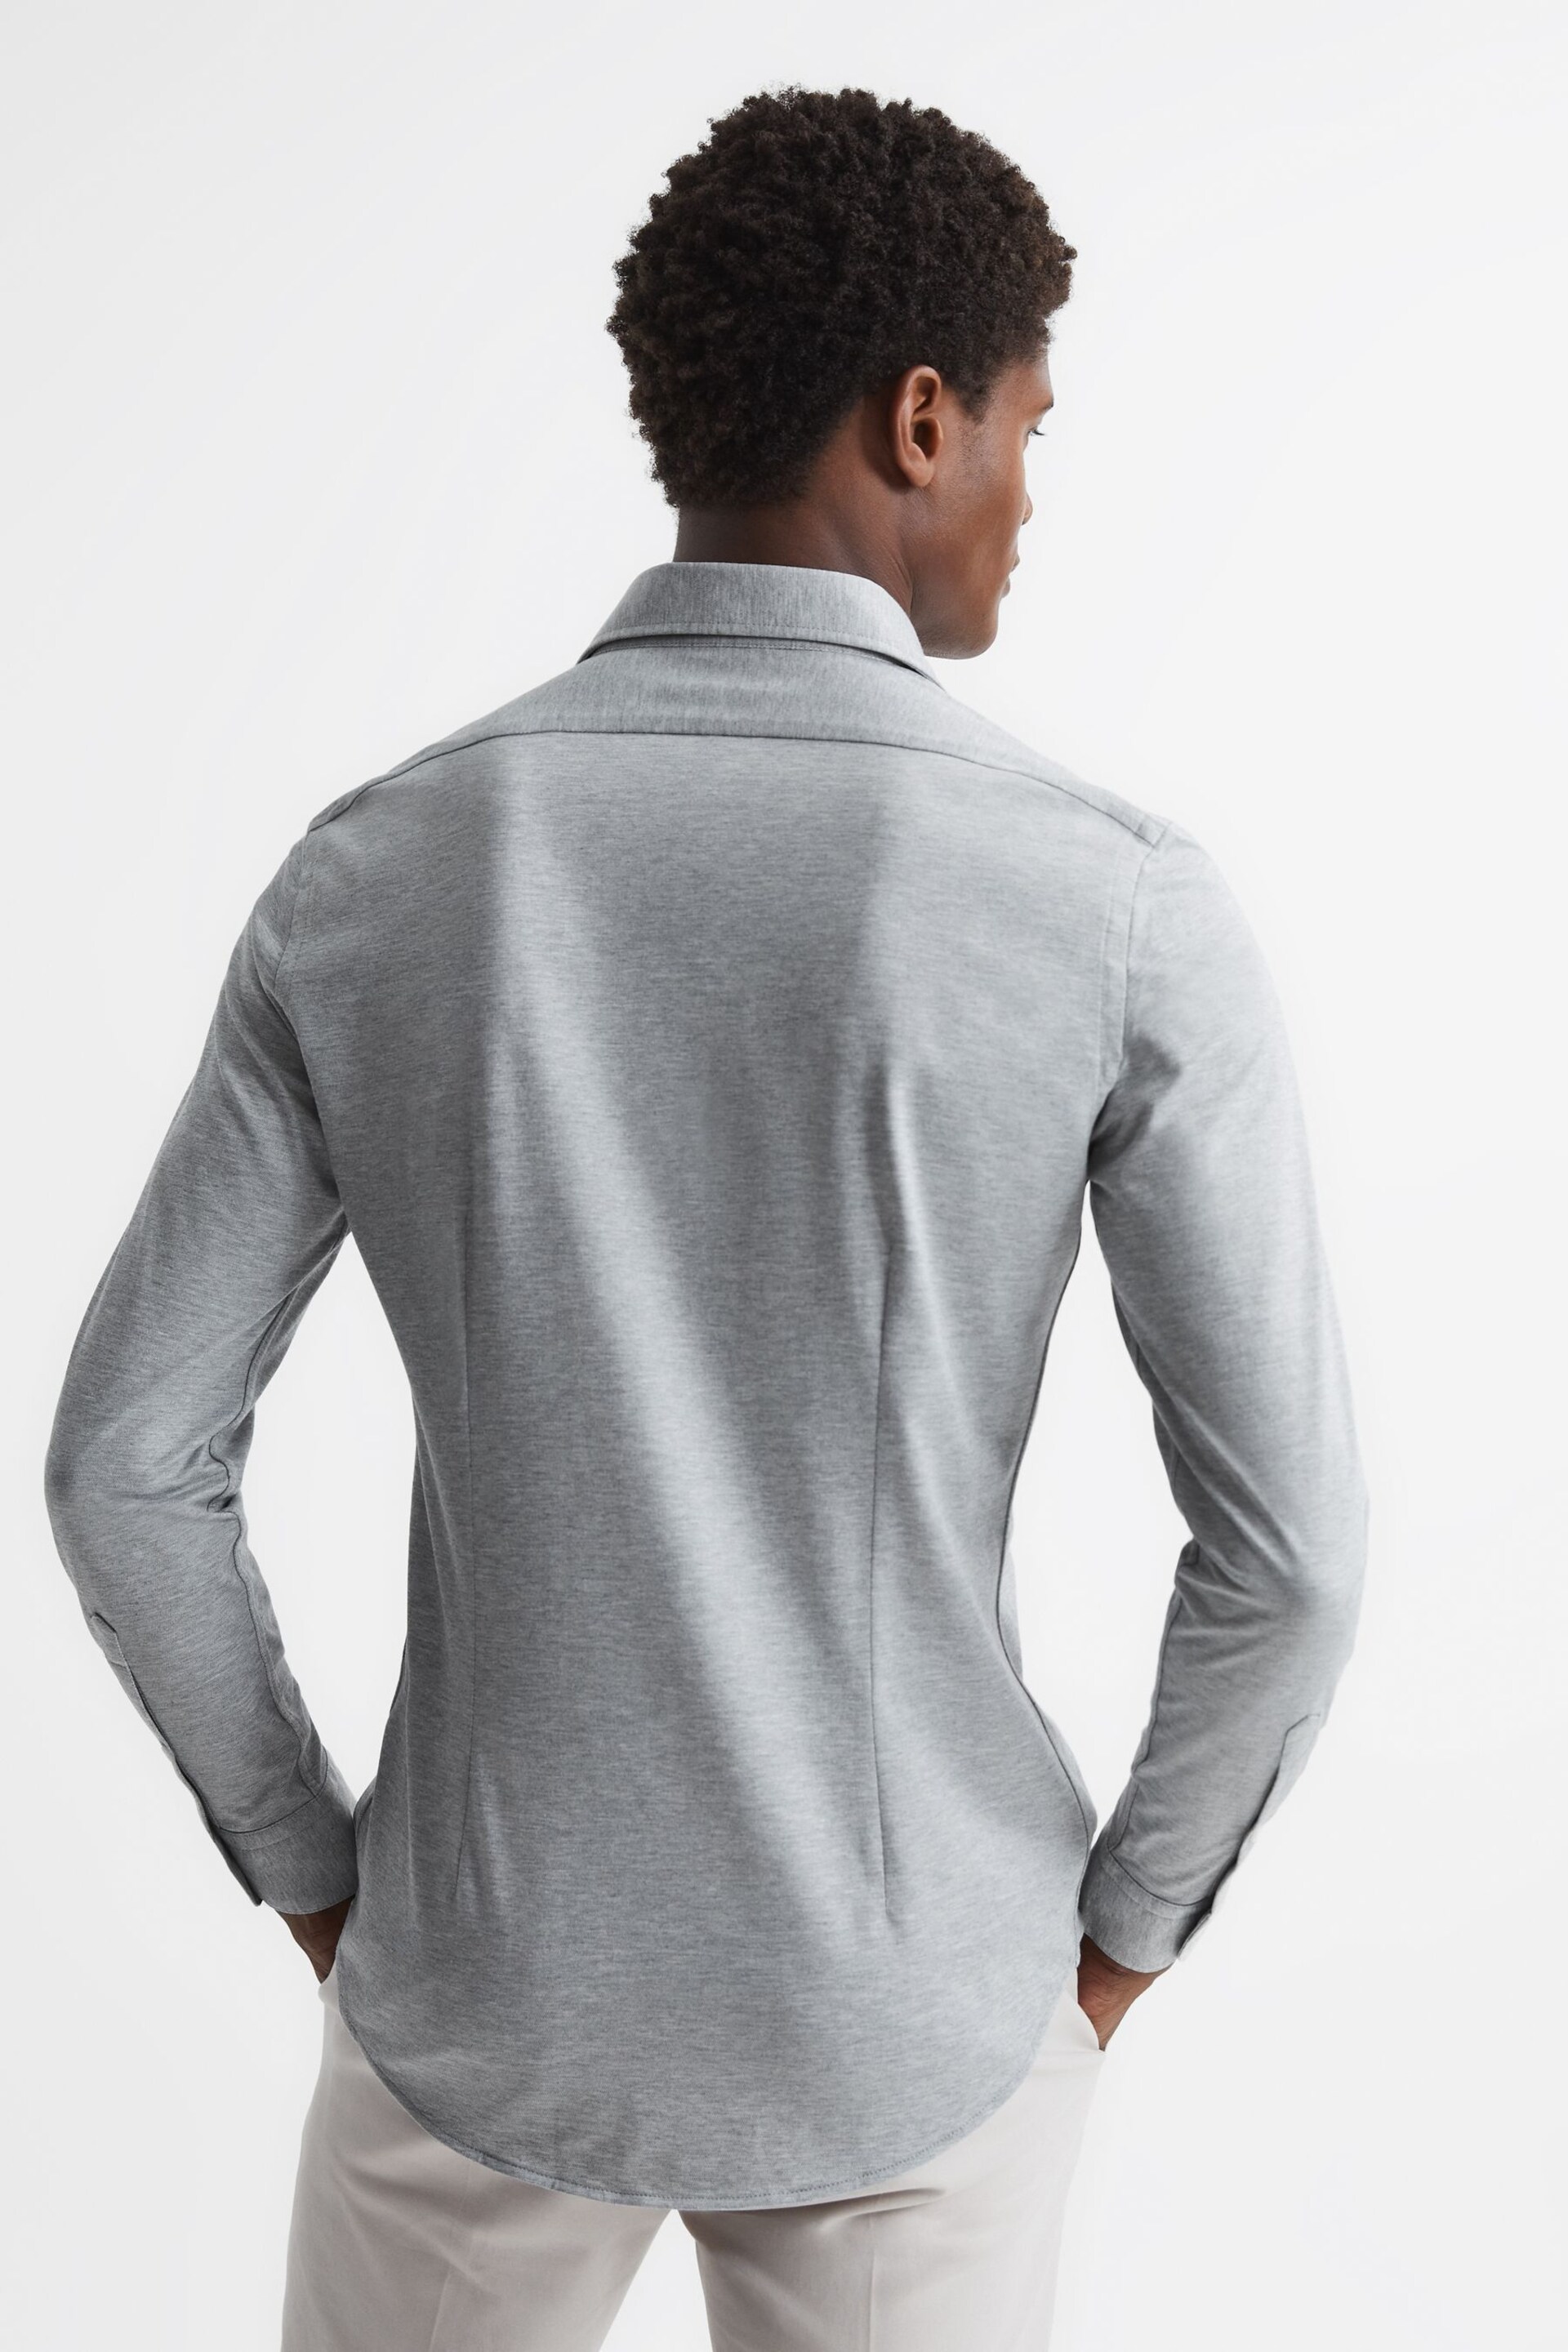 Reiss Grey Melange Nate Cutaway Collar Jersey Slim Fit Shirt - Image 5 of 6